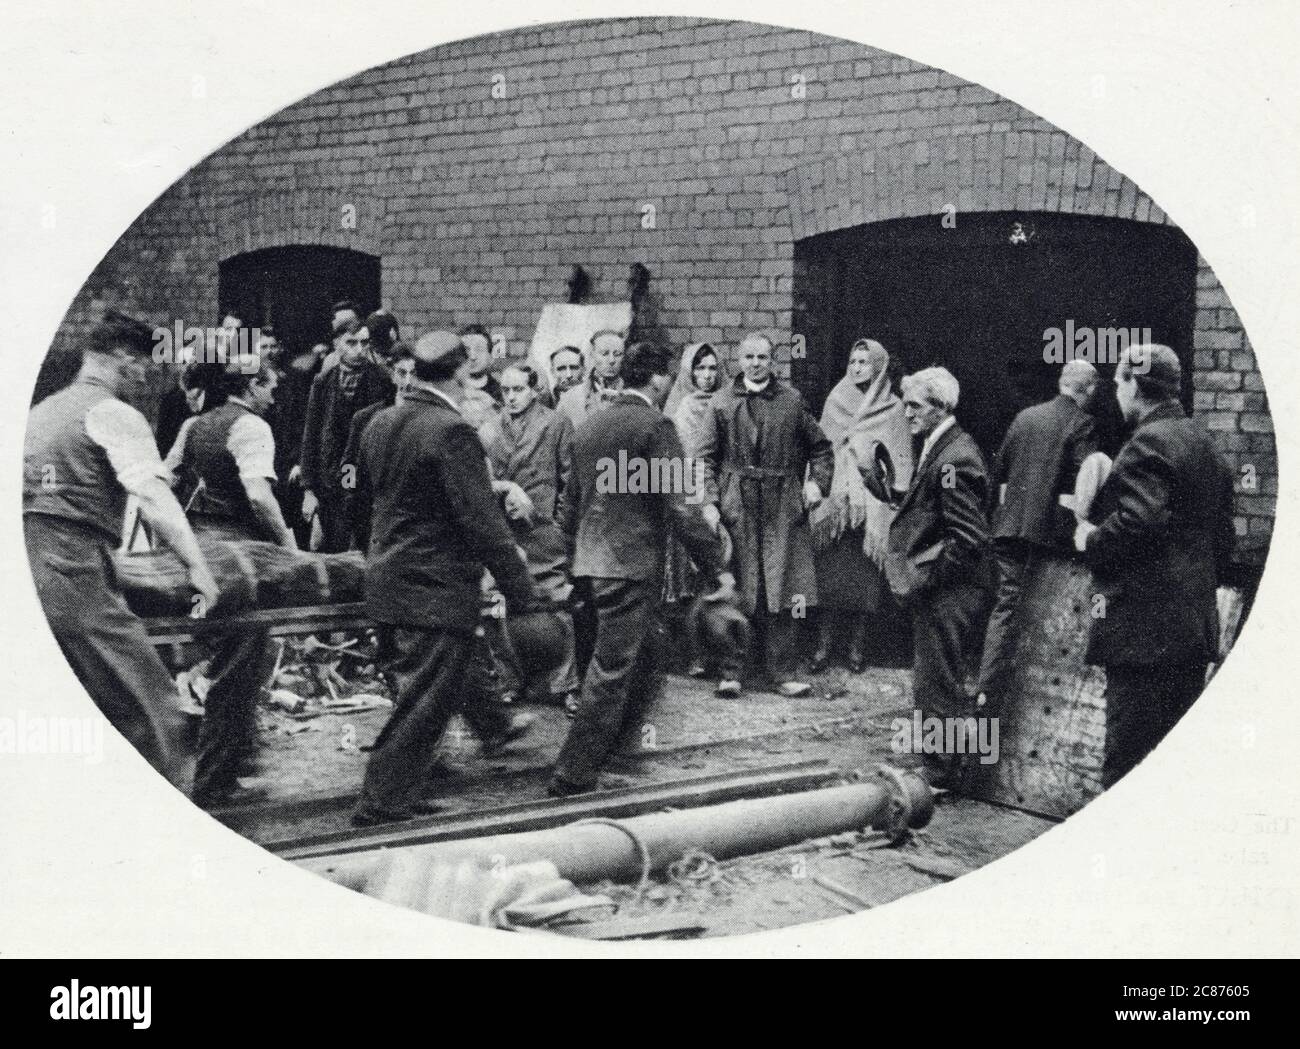 Bickershaw Colliery in Lancashire, wo die Kohlebergwerk-Katastrophe am 10. Oktober 1932 geschah. Ein Aufzug mit 20 Personen fiel auf die Mine und tötete alle außer einer Person. Foto, das die Rettungsaktion zeigt, die einen der Verstorbenen herausholt. Datum: Oktober 1932 Stockfoto